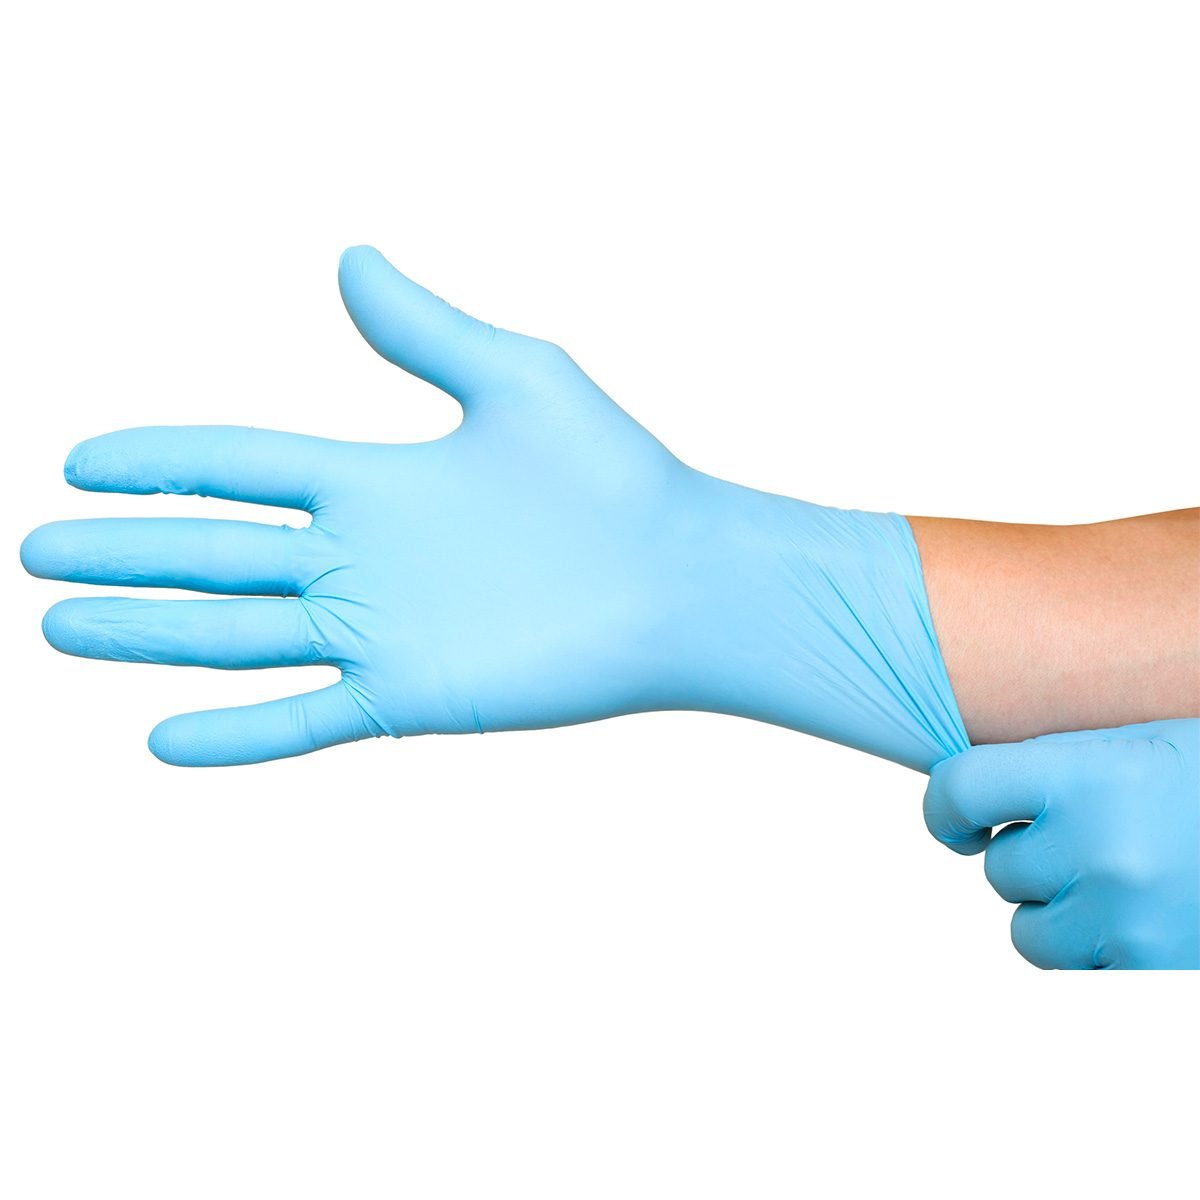 latex gloves vs vinyl gloves